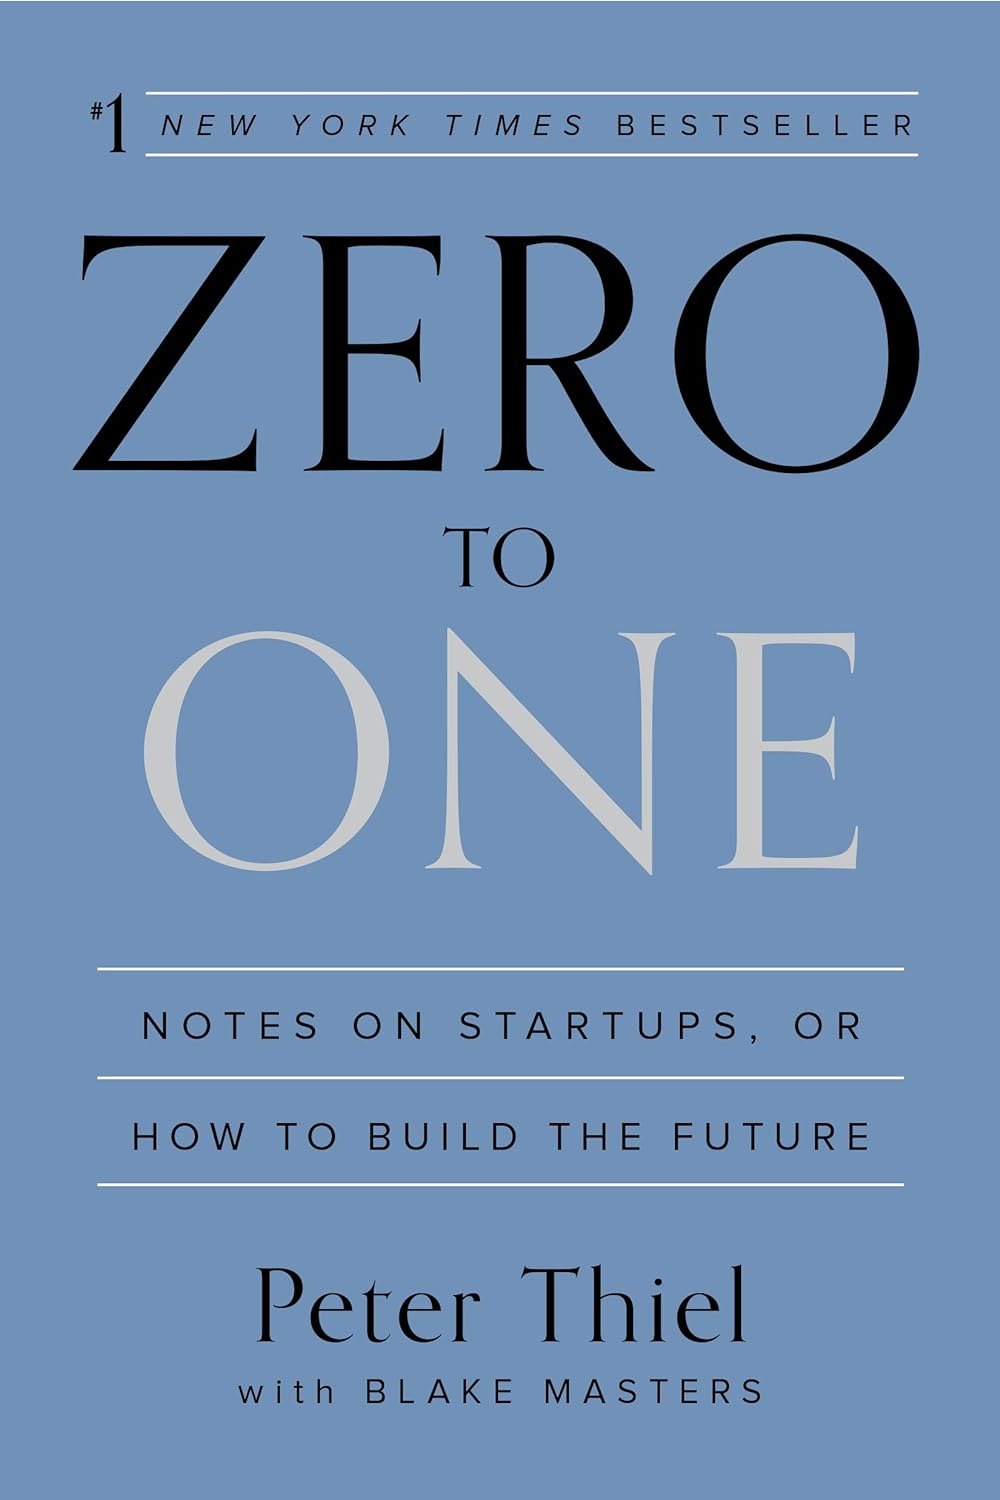 1. Peter Thiel - 'Zero to One' 🚀